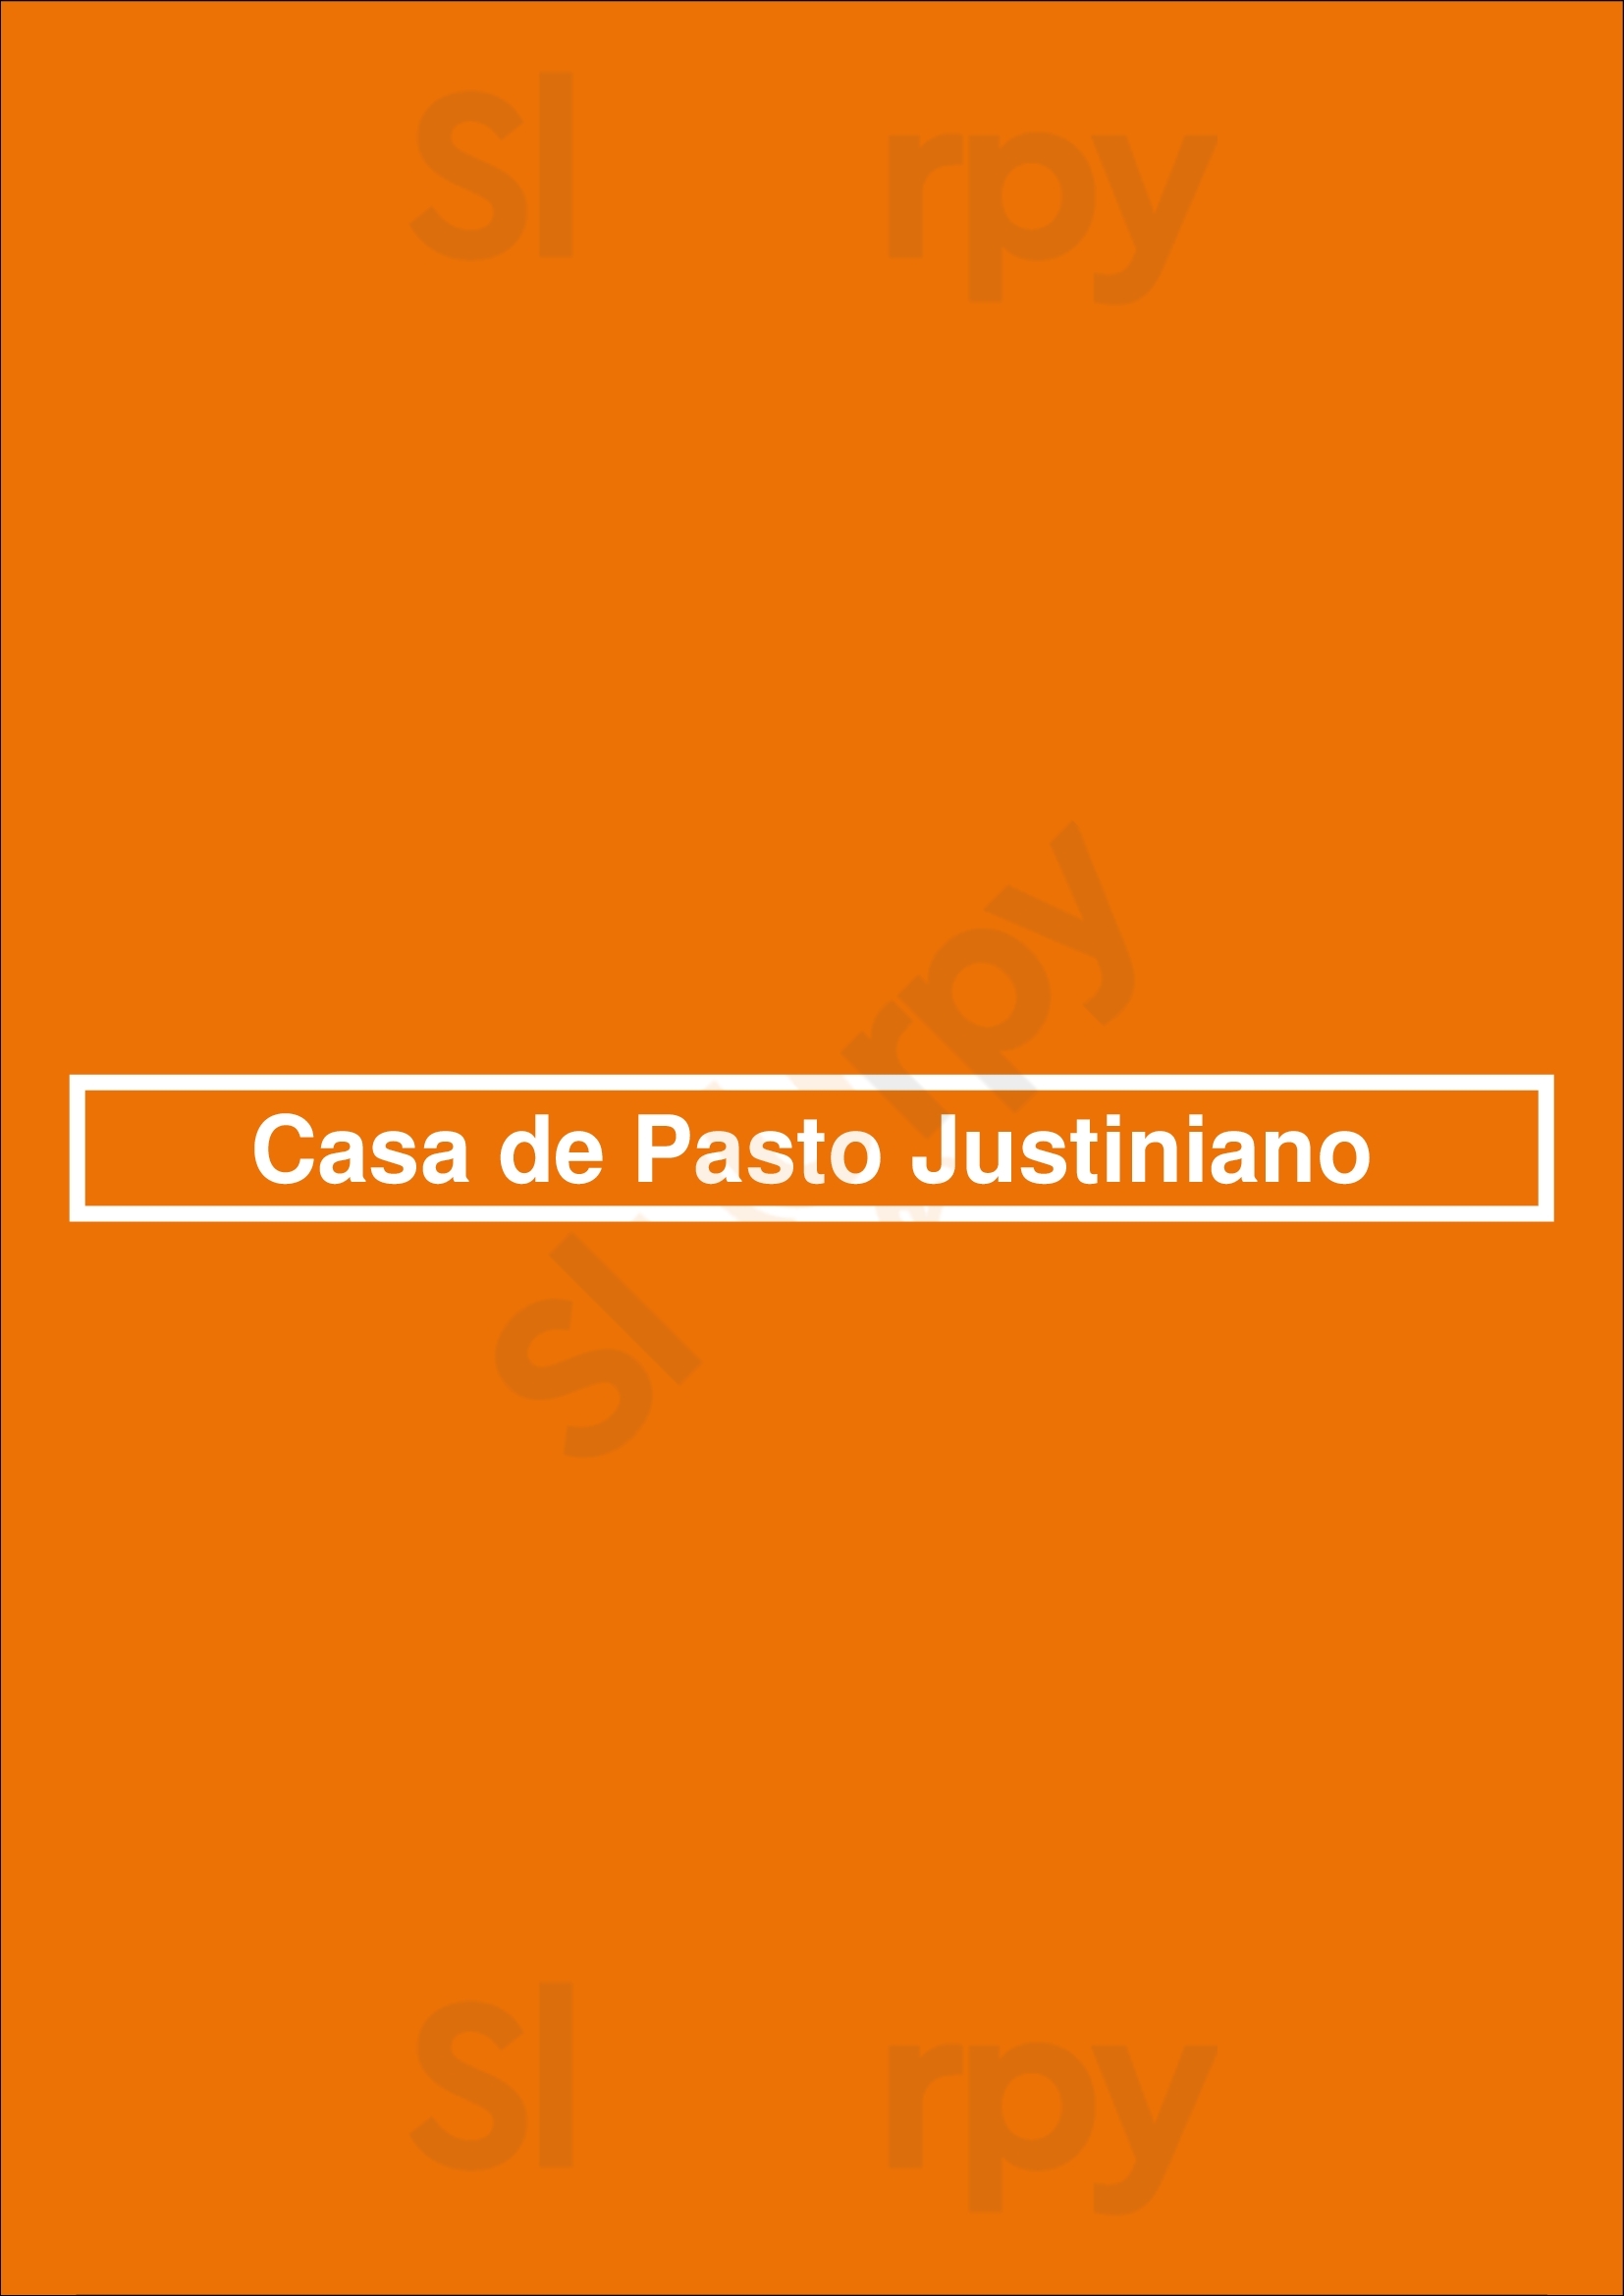 Casa De Pasto Justiniano Seixal Menu - 1